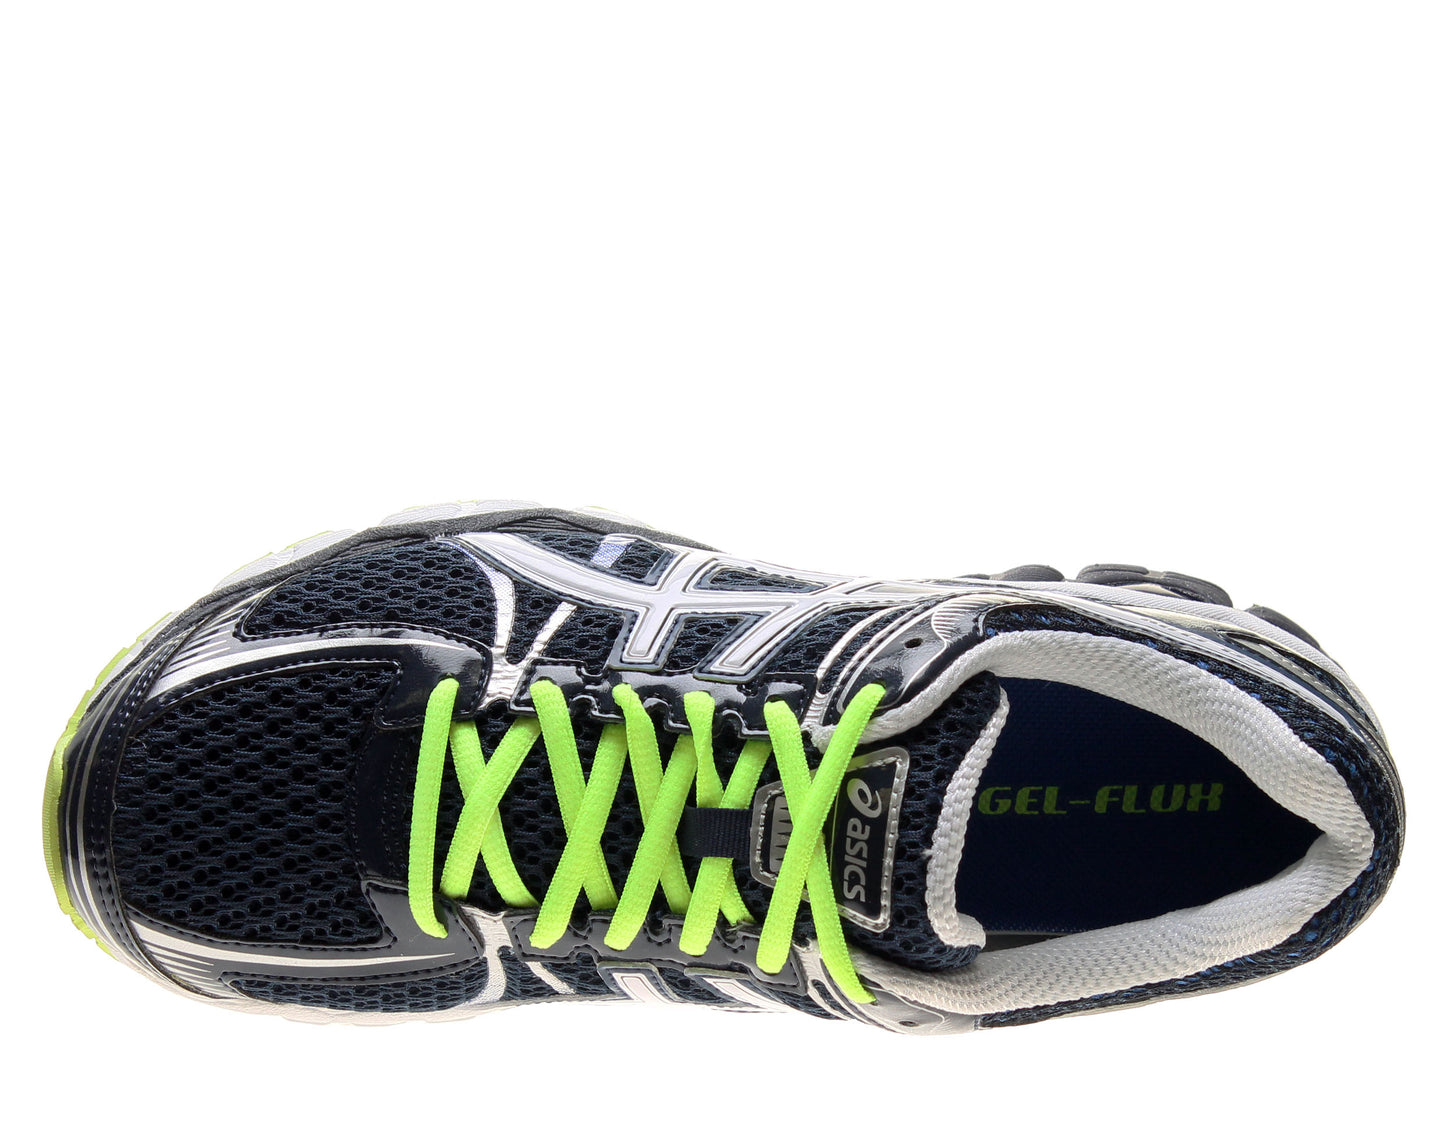 ASICS Gel-Flux Men's Running Shoes